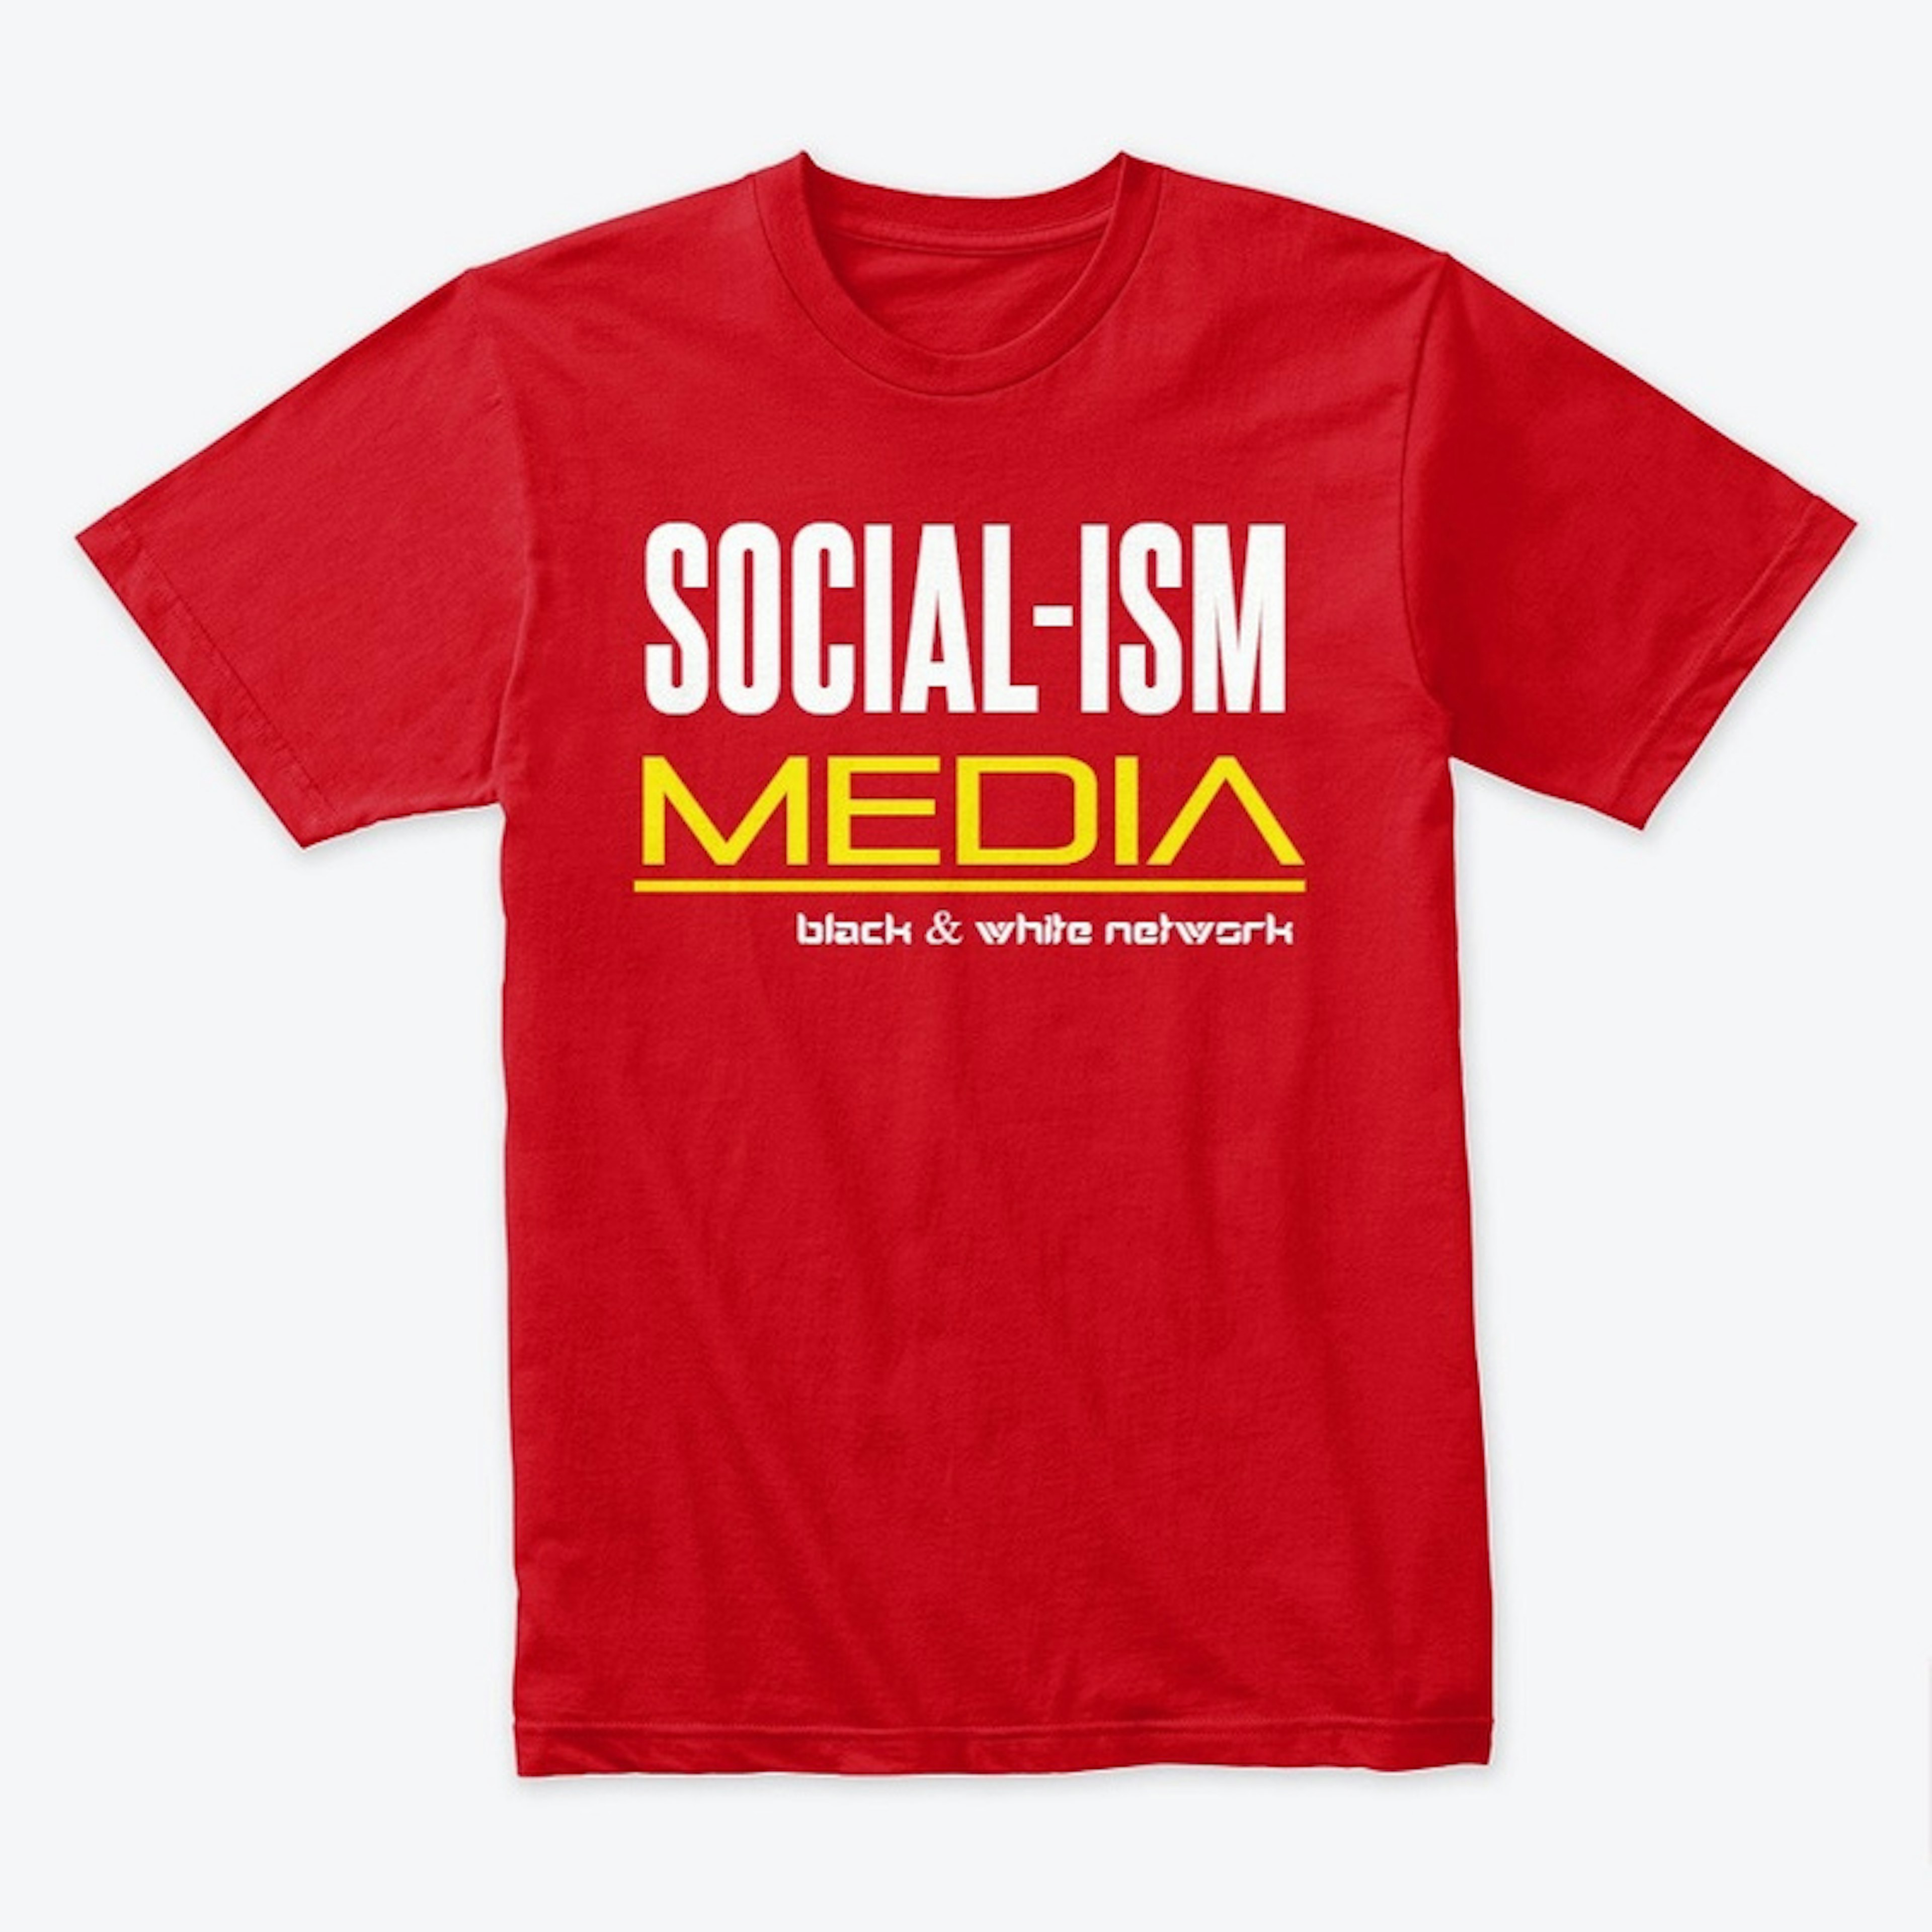 Social-ism Media Shirt